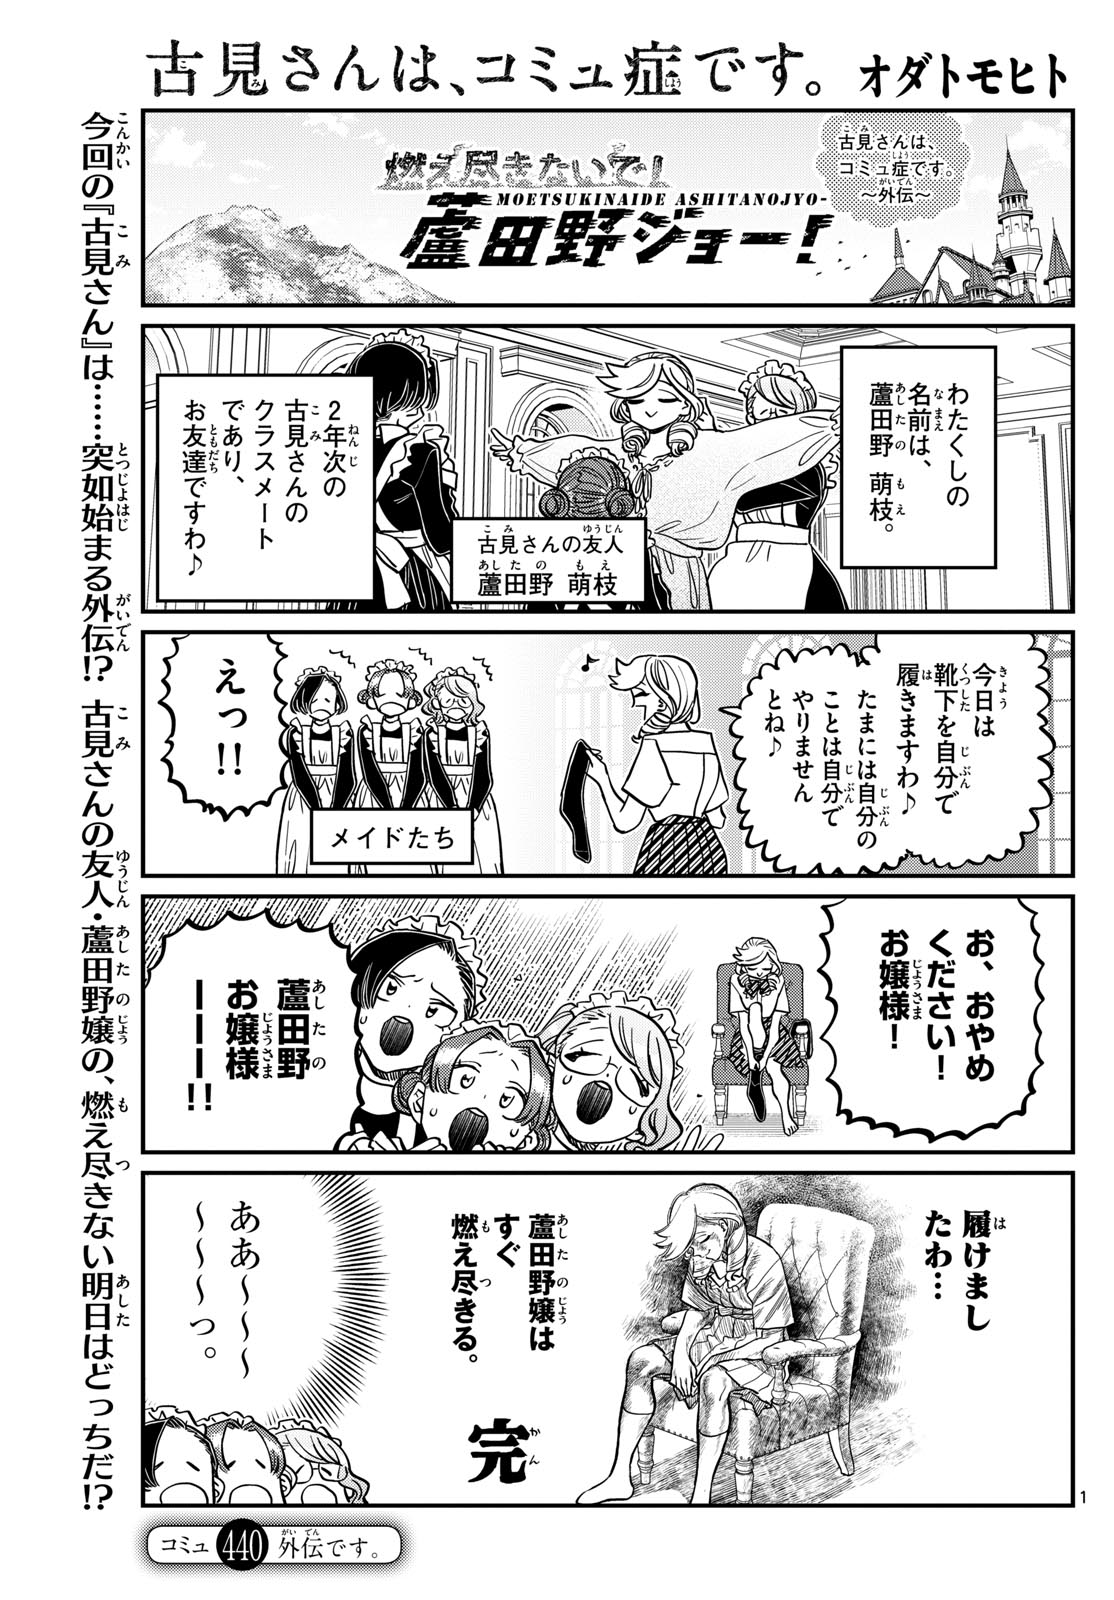 Komi-san wa Komyushou Desu - Chapter 440 - Page 1